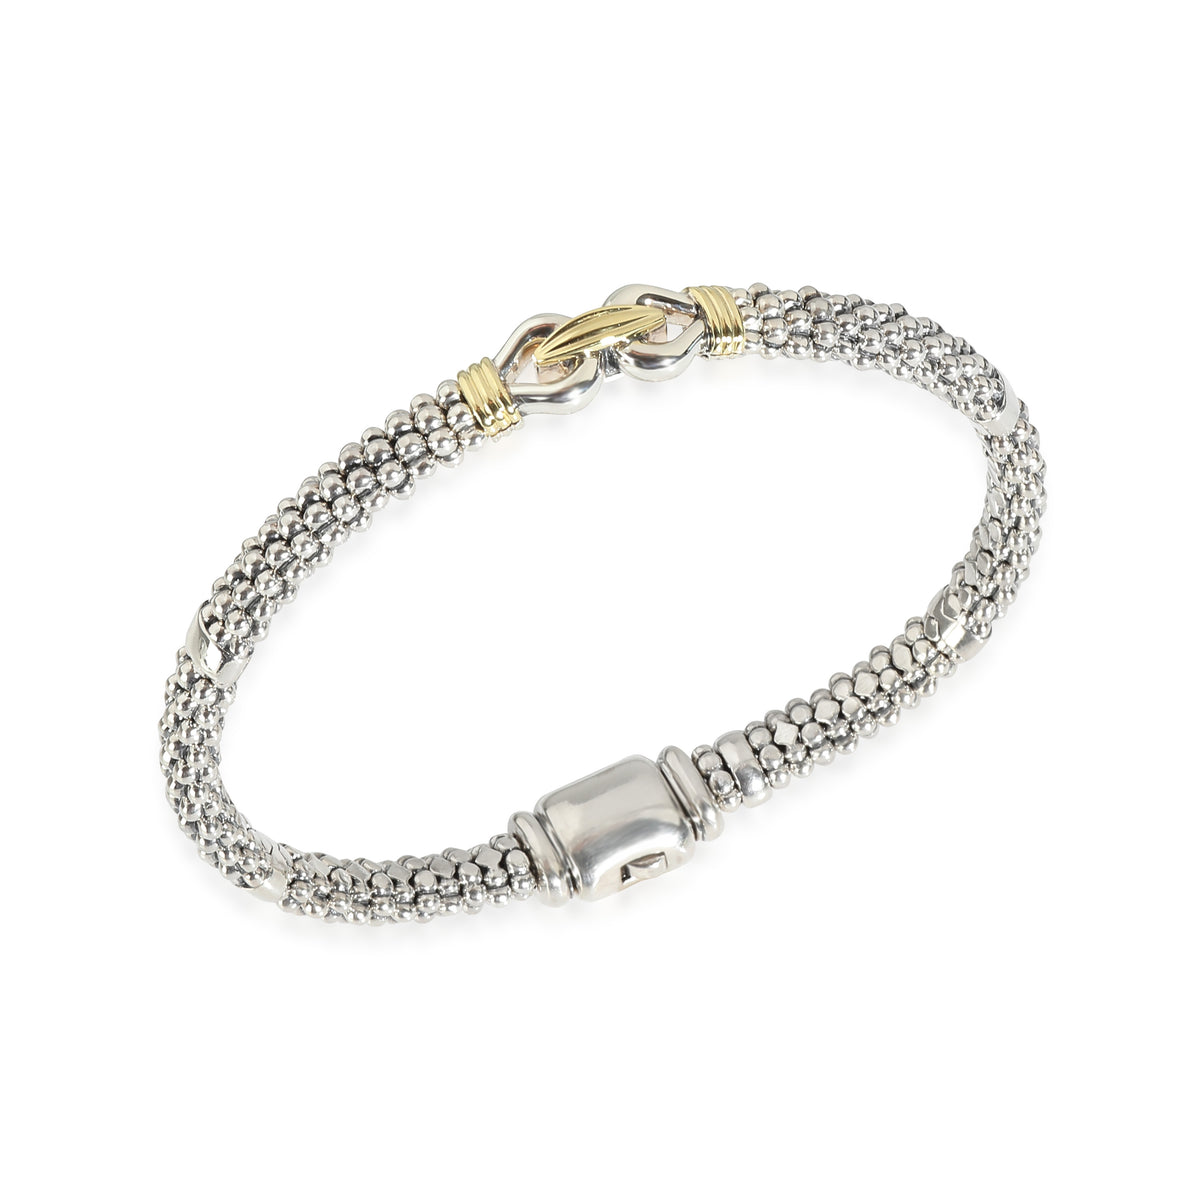 Caviar Buckle Bracelet in 18K Yellow Gold/Sterling Silver